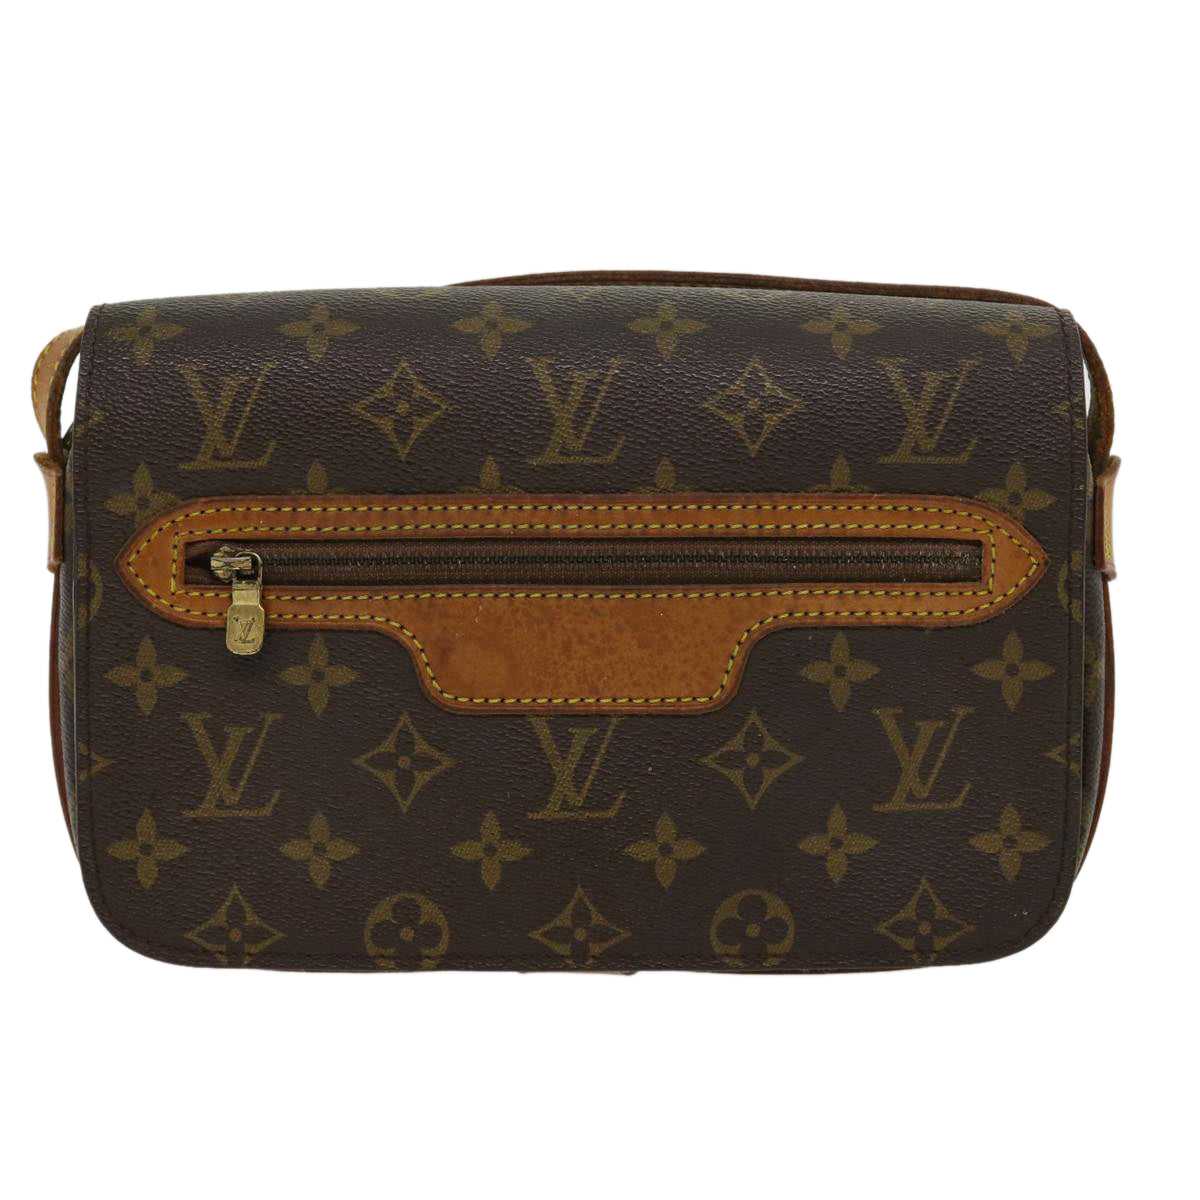 Auth Louis Vuitton Monogram Saint-Germain M51210 Women's Shoulder Bag